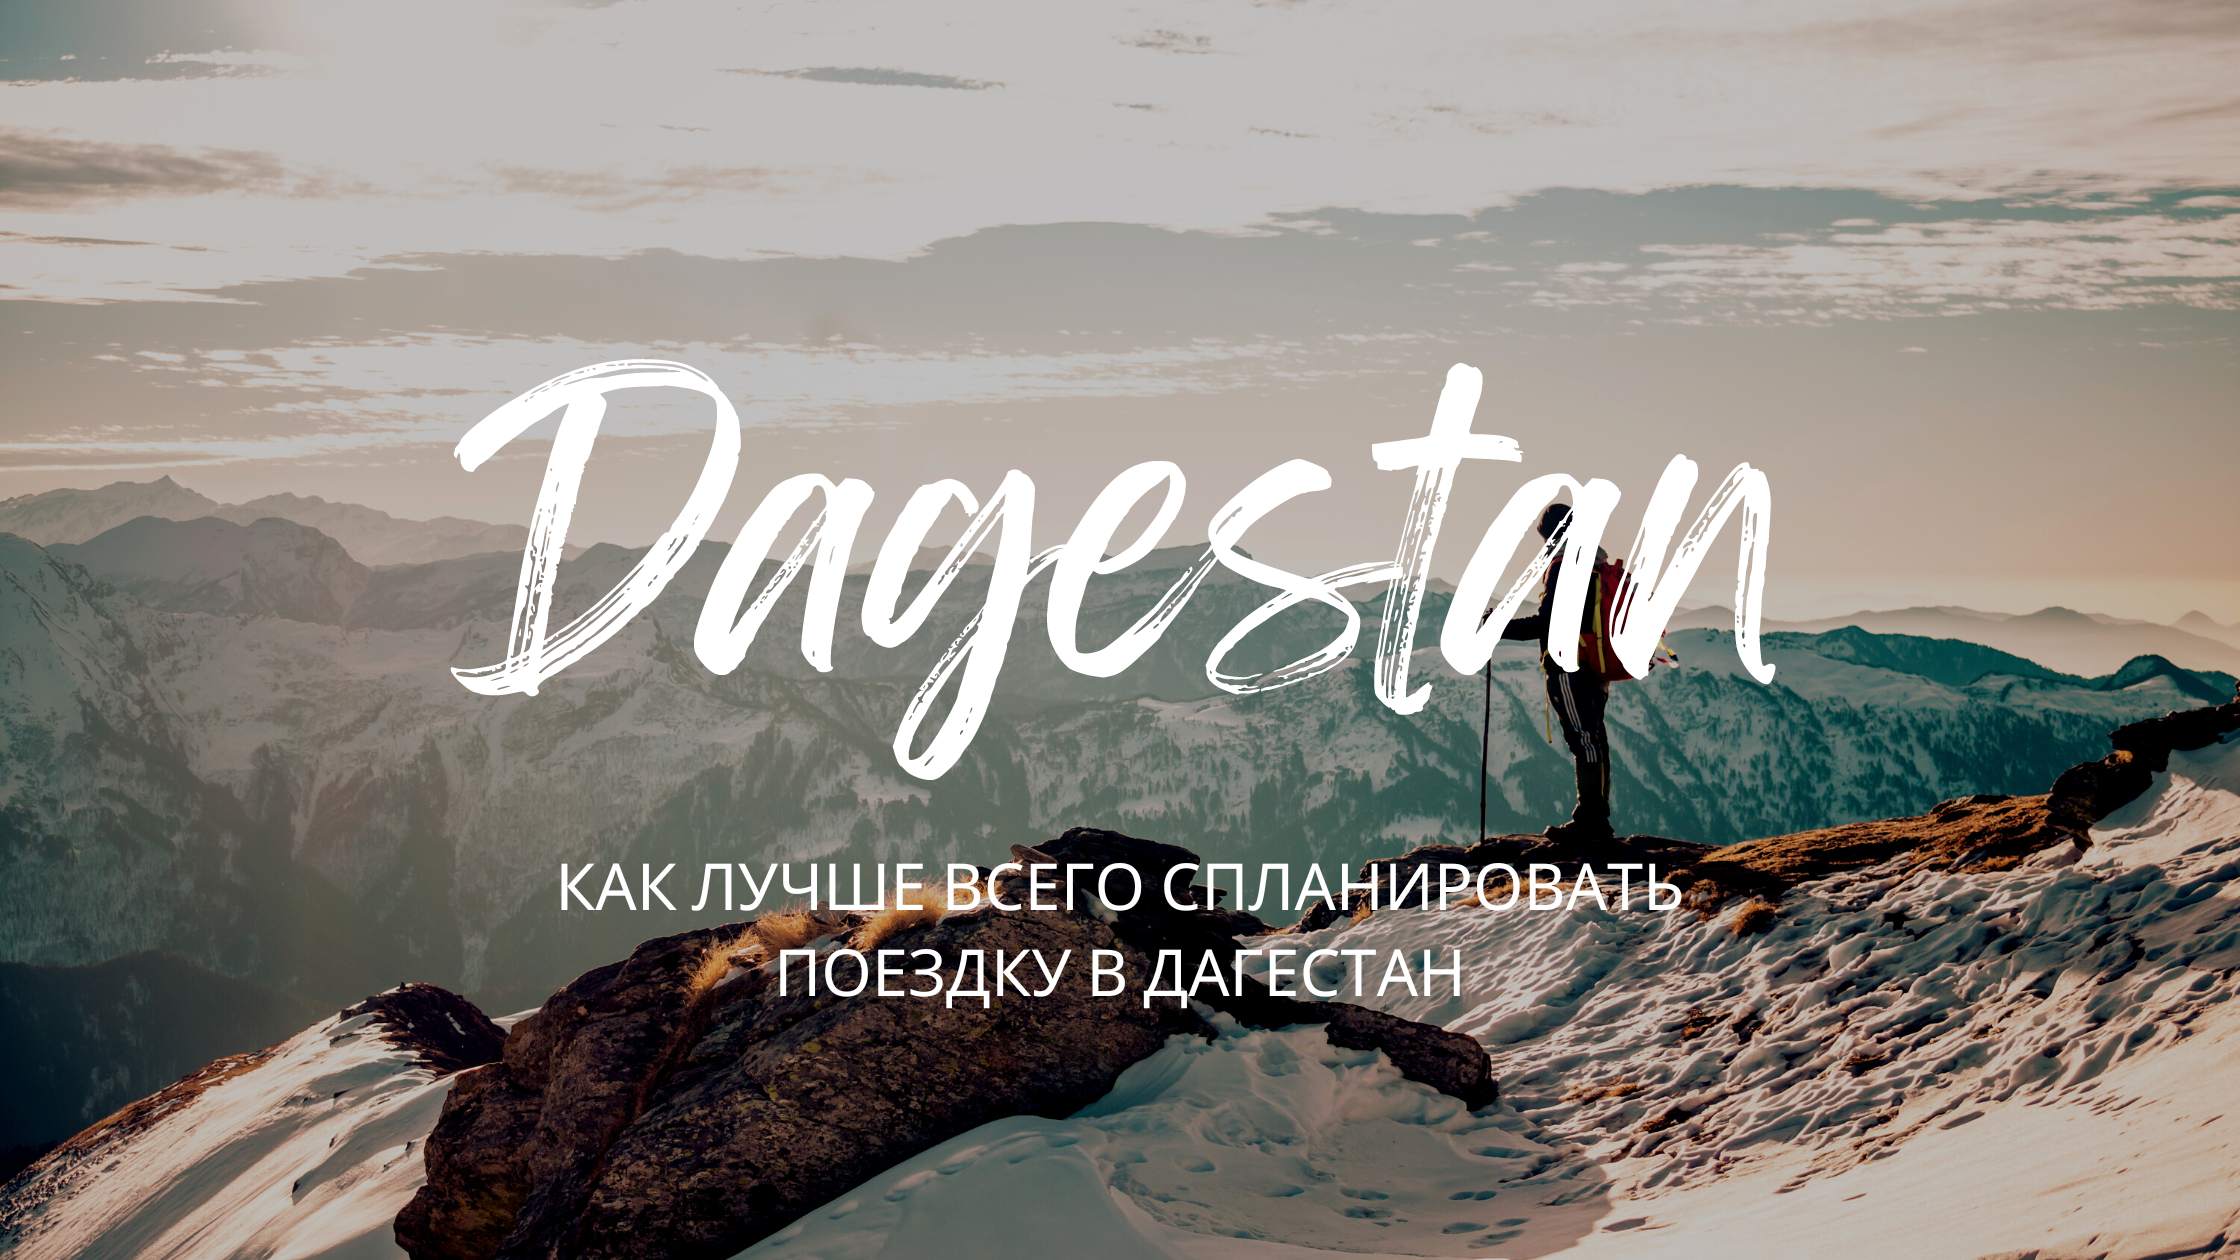 Какие культурные и исторические мероприятия в Дагестане стоит посетить?